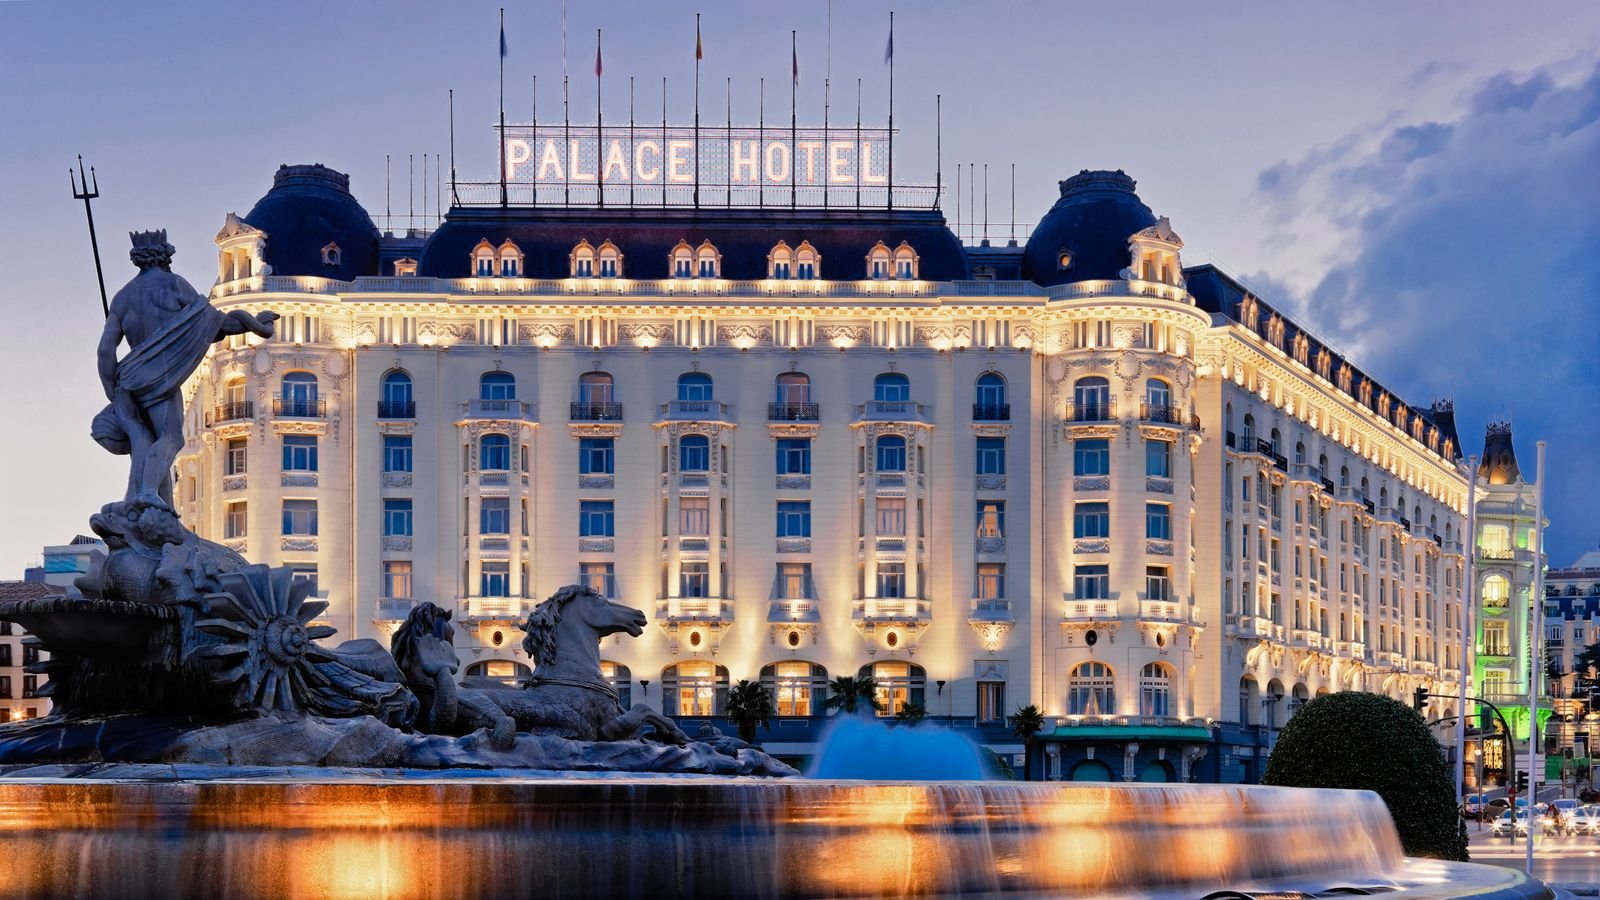 Hoy arranca Wloggers 2014 en el Hotel Palace Madrid